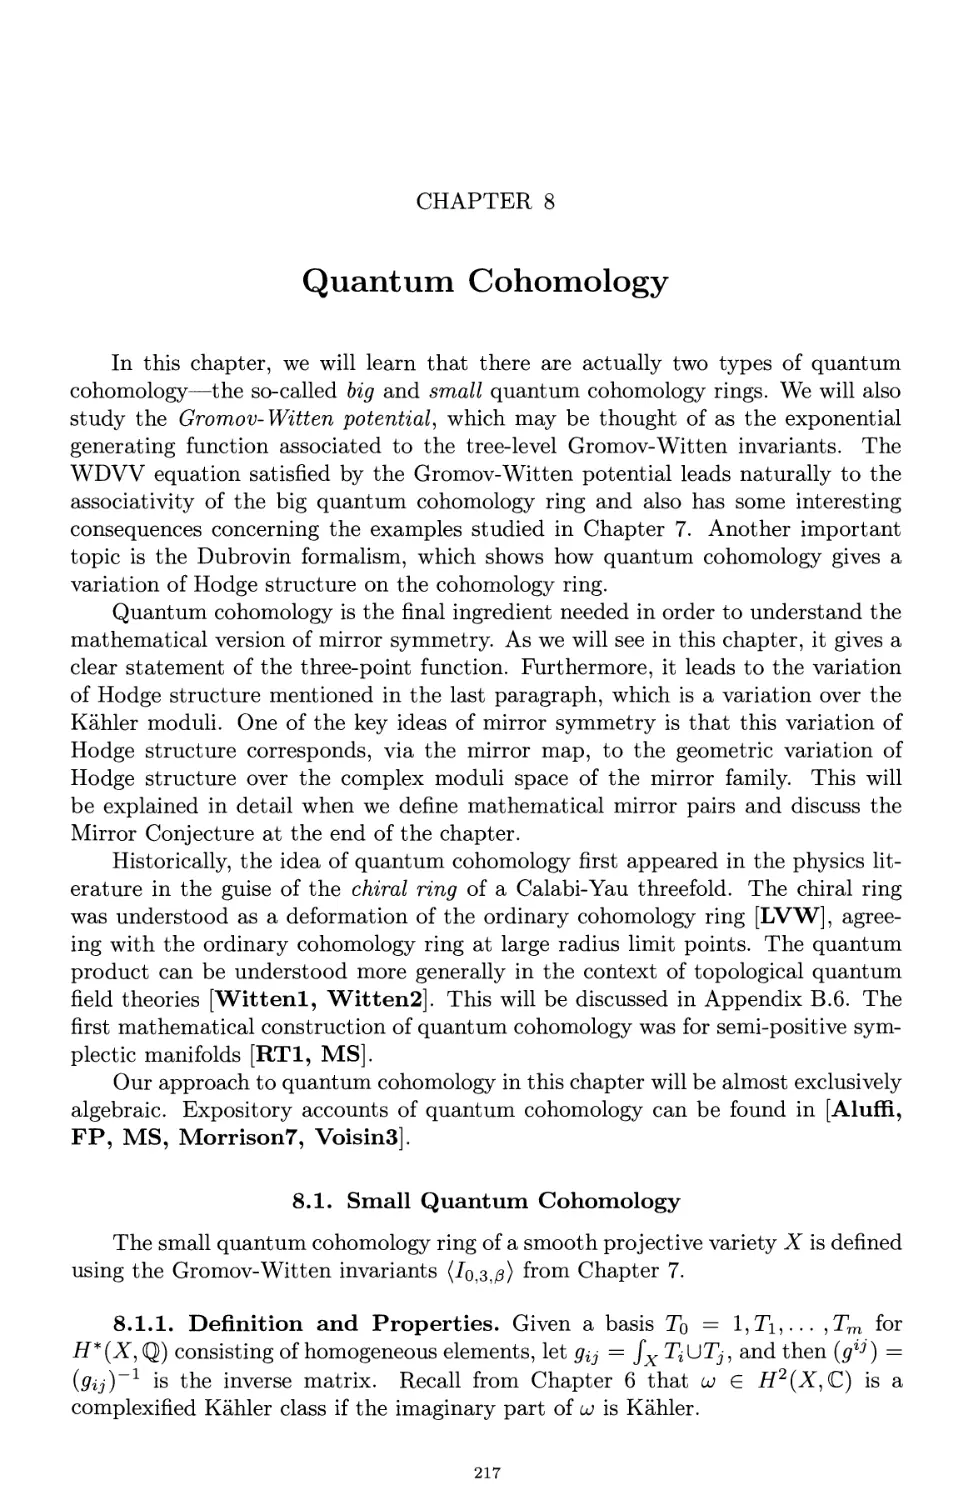 Chapter 8. Quantum Cohomology